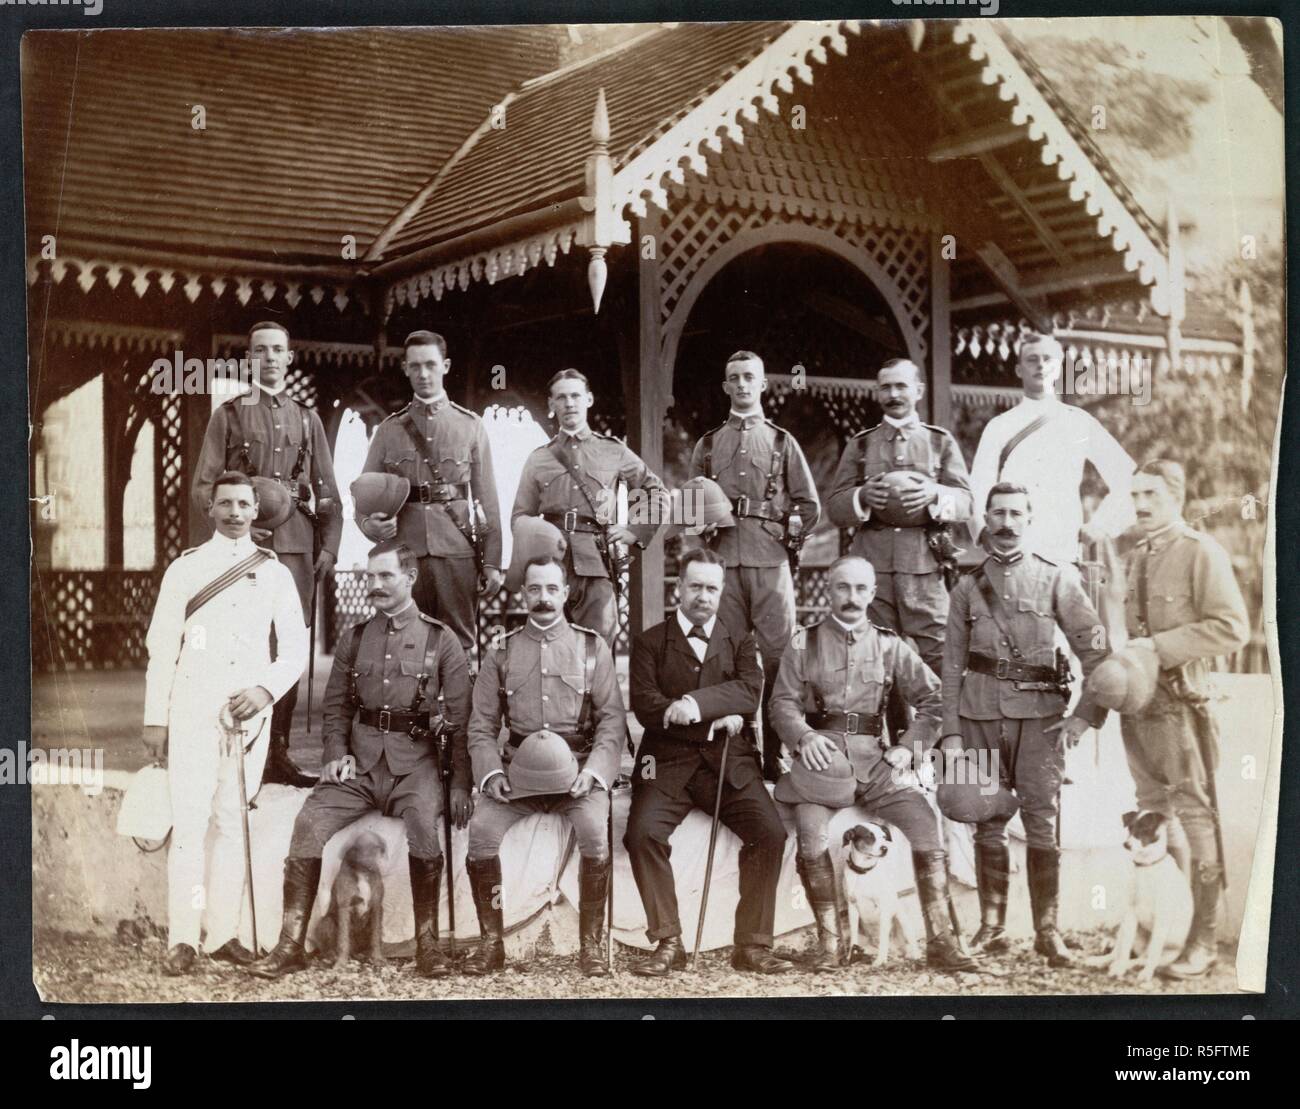 Eine Gruppe Portrait von uniformierten Beamten der örtlichen Garnison vor dem Tennis Pavillon, Port Blair [Andaman Inseln]. Tempel Sammlung: Ansichten und Szenen in der Andamanen und Nikobaren. c. 1890. Foto. Quelle: Foto 125/2 (76). Autor: Unbekannt. Stockfoto